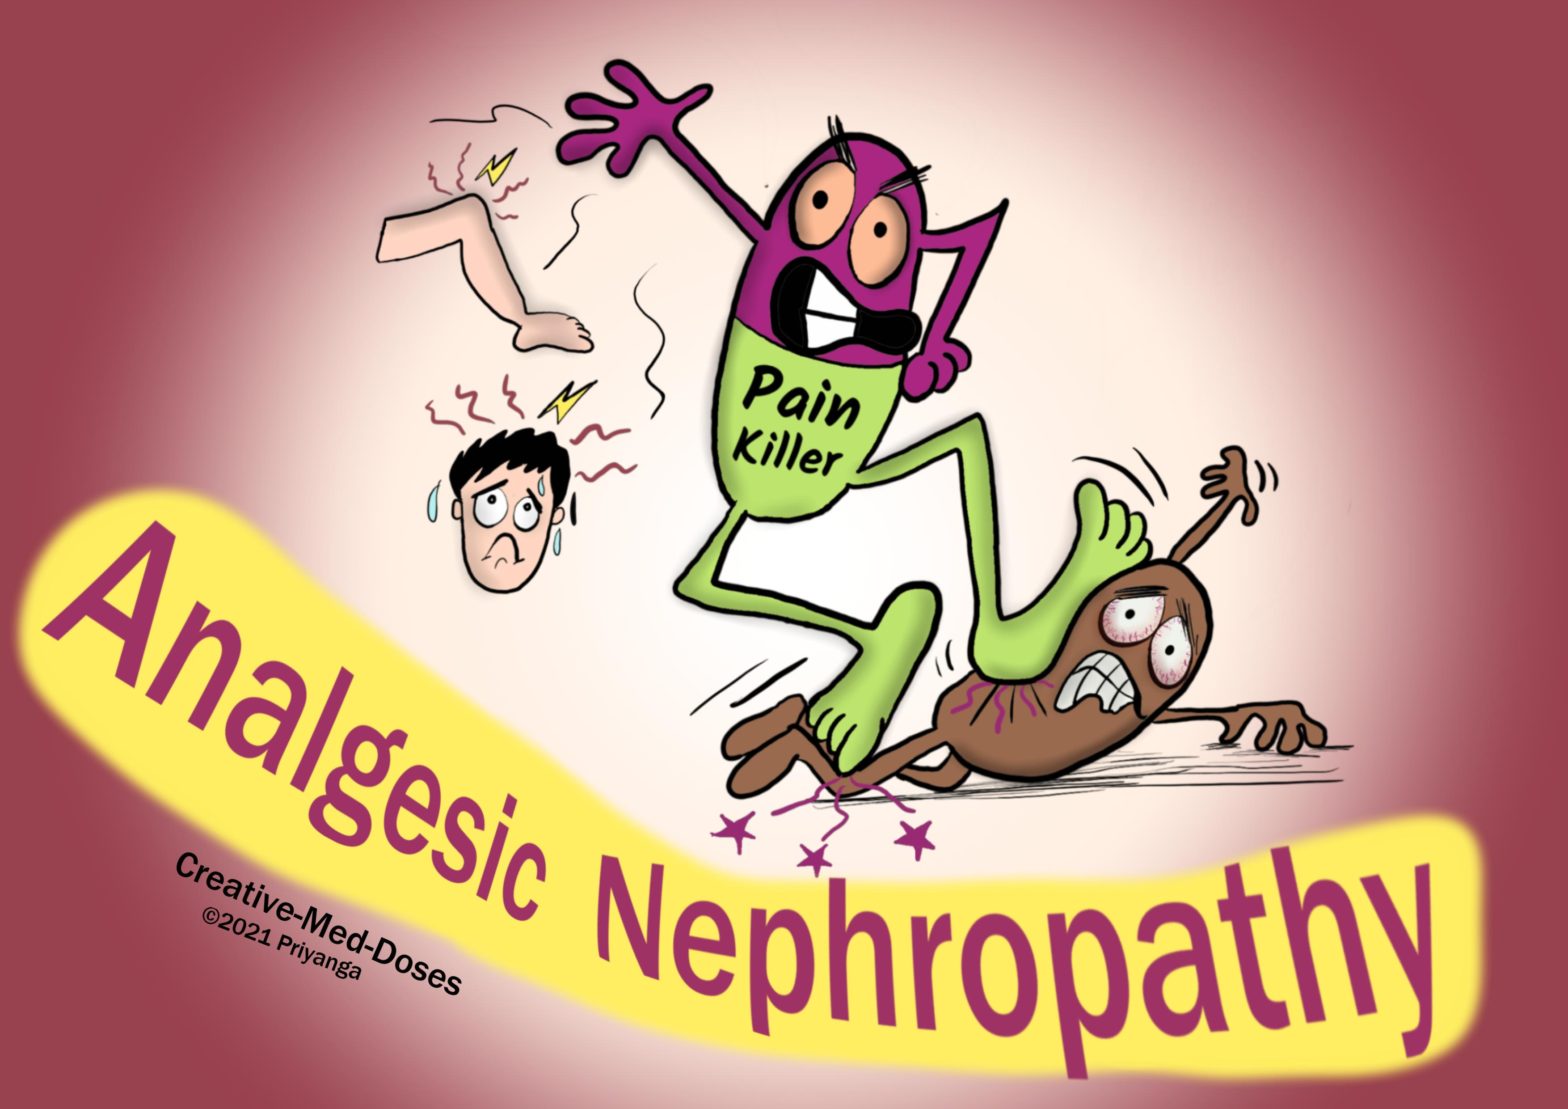 Analgesic nephropathy killing kidneys